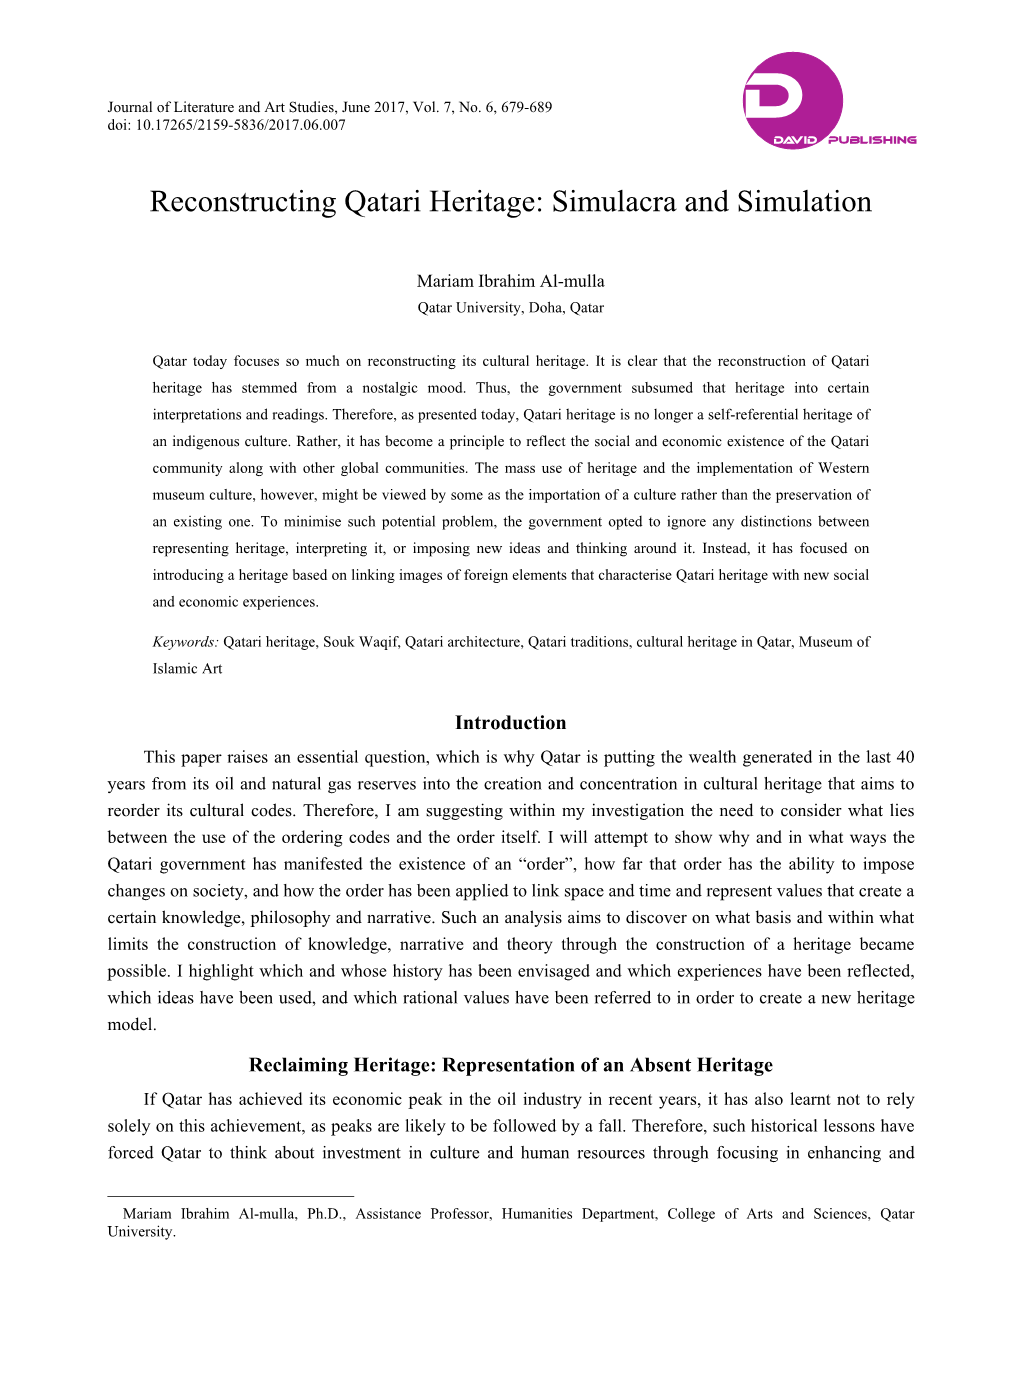 Reconstructing Qatari Heritage: Simulacra and Simulation